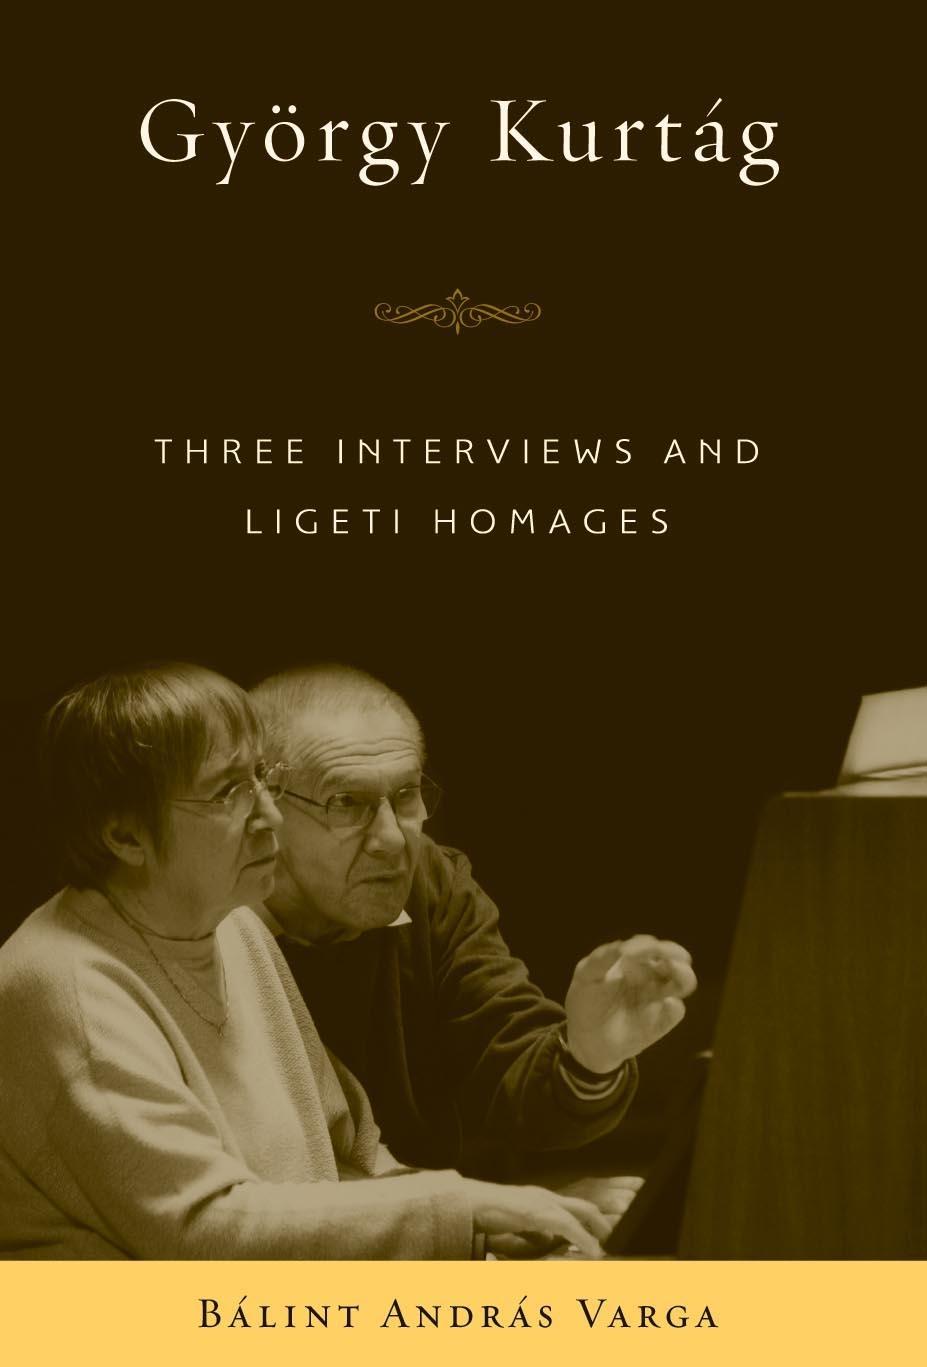 György Kurtág / Three Interviews and Ligeti Homages / Bálint András Varga / Buch / Englisch / 2009 / Boydell & Brewer / EAN 9781580463287 - Varga, Bálint András